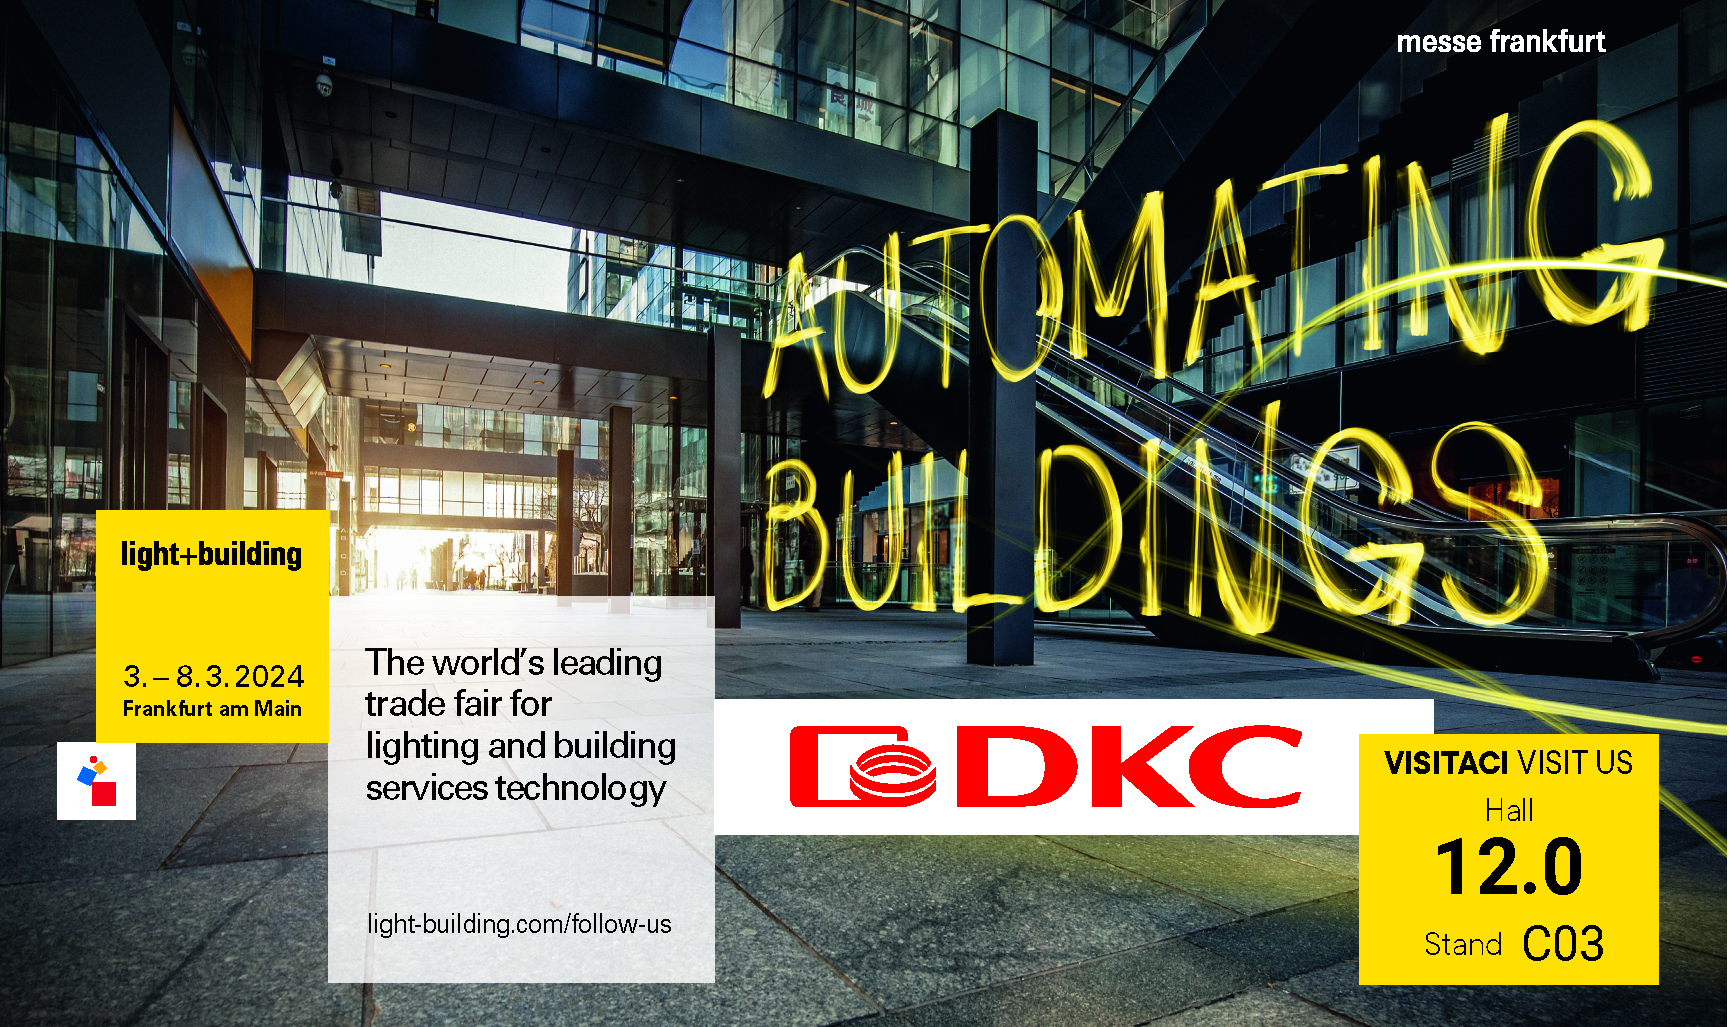 “Light + Building” dal 3 all’8 marzo a Francoforte: la vetrina ideale per esplorare l’ampia gamma di soluzioni innovative, coordinate e funzionali di DKC